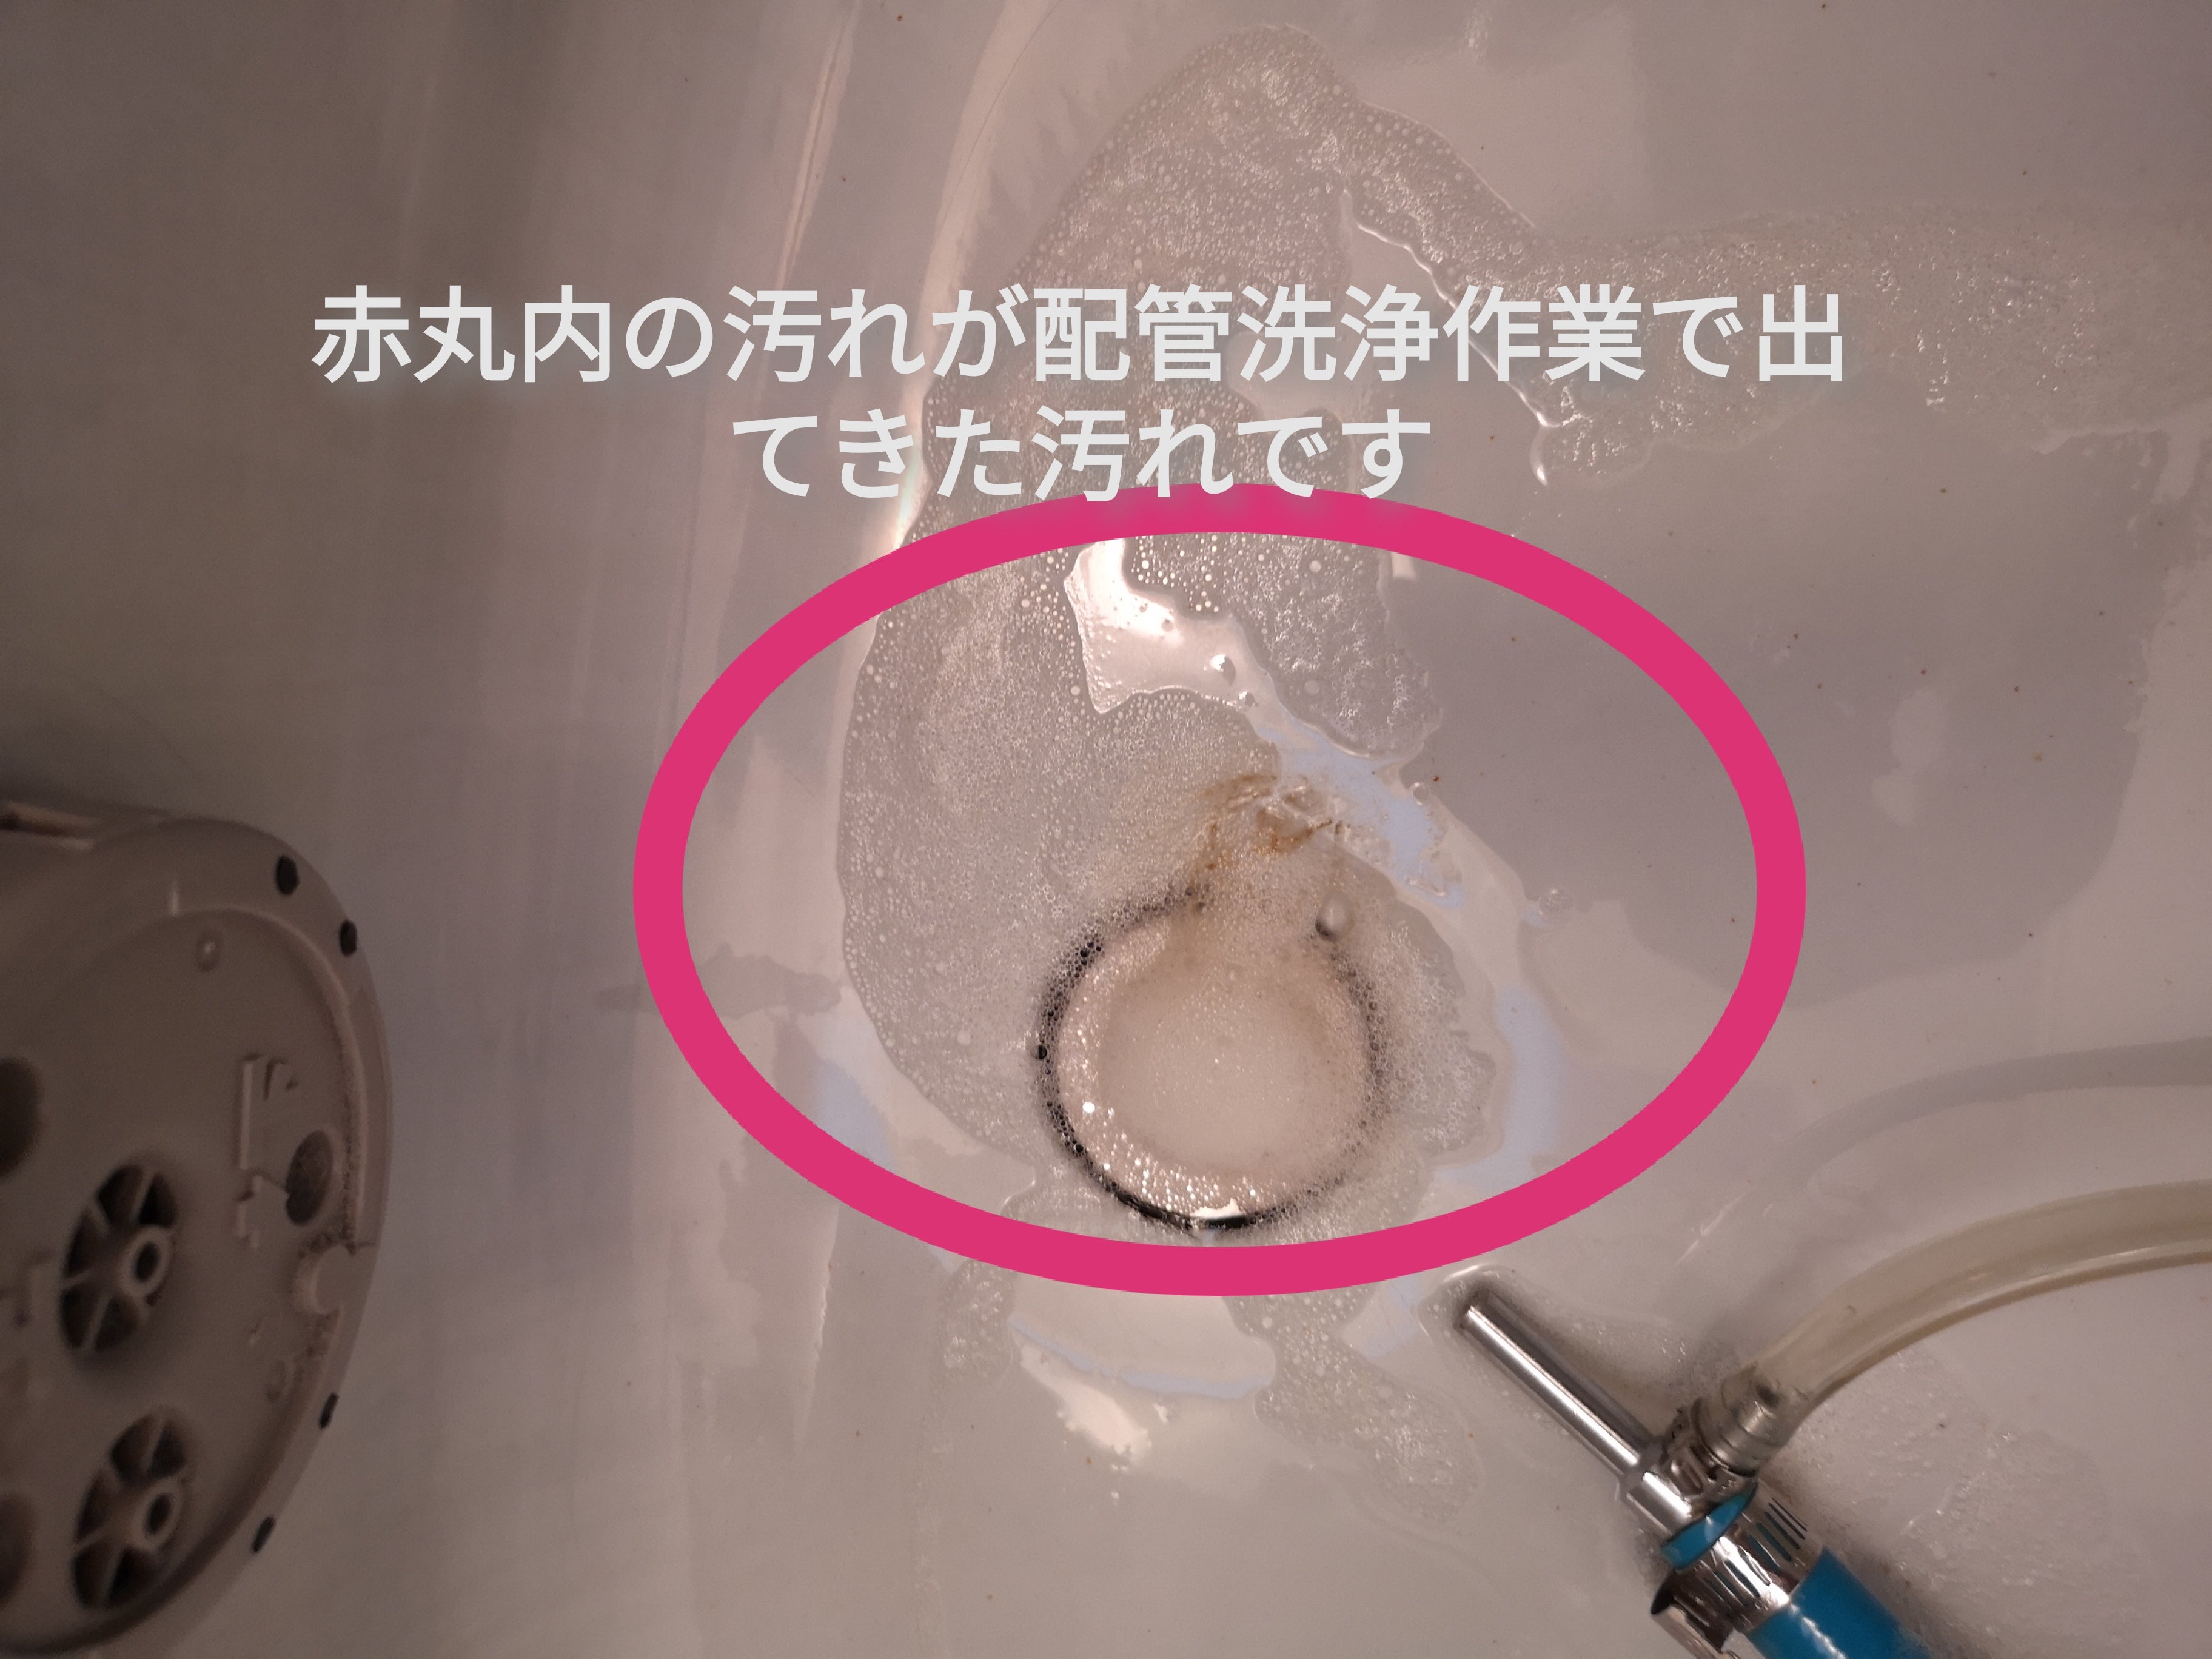 ☆『風呂釜配管洗浄』の割引クーポンをご用意♪の写真